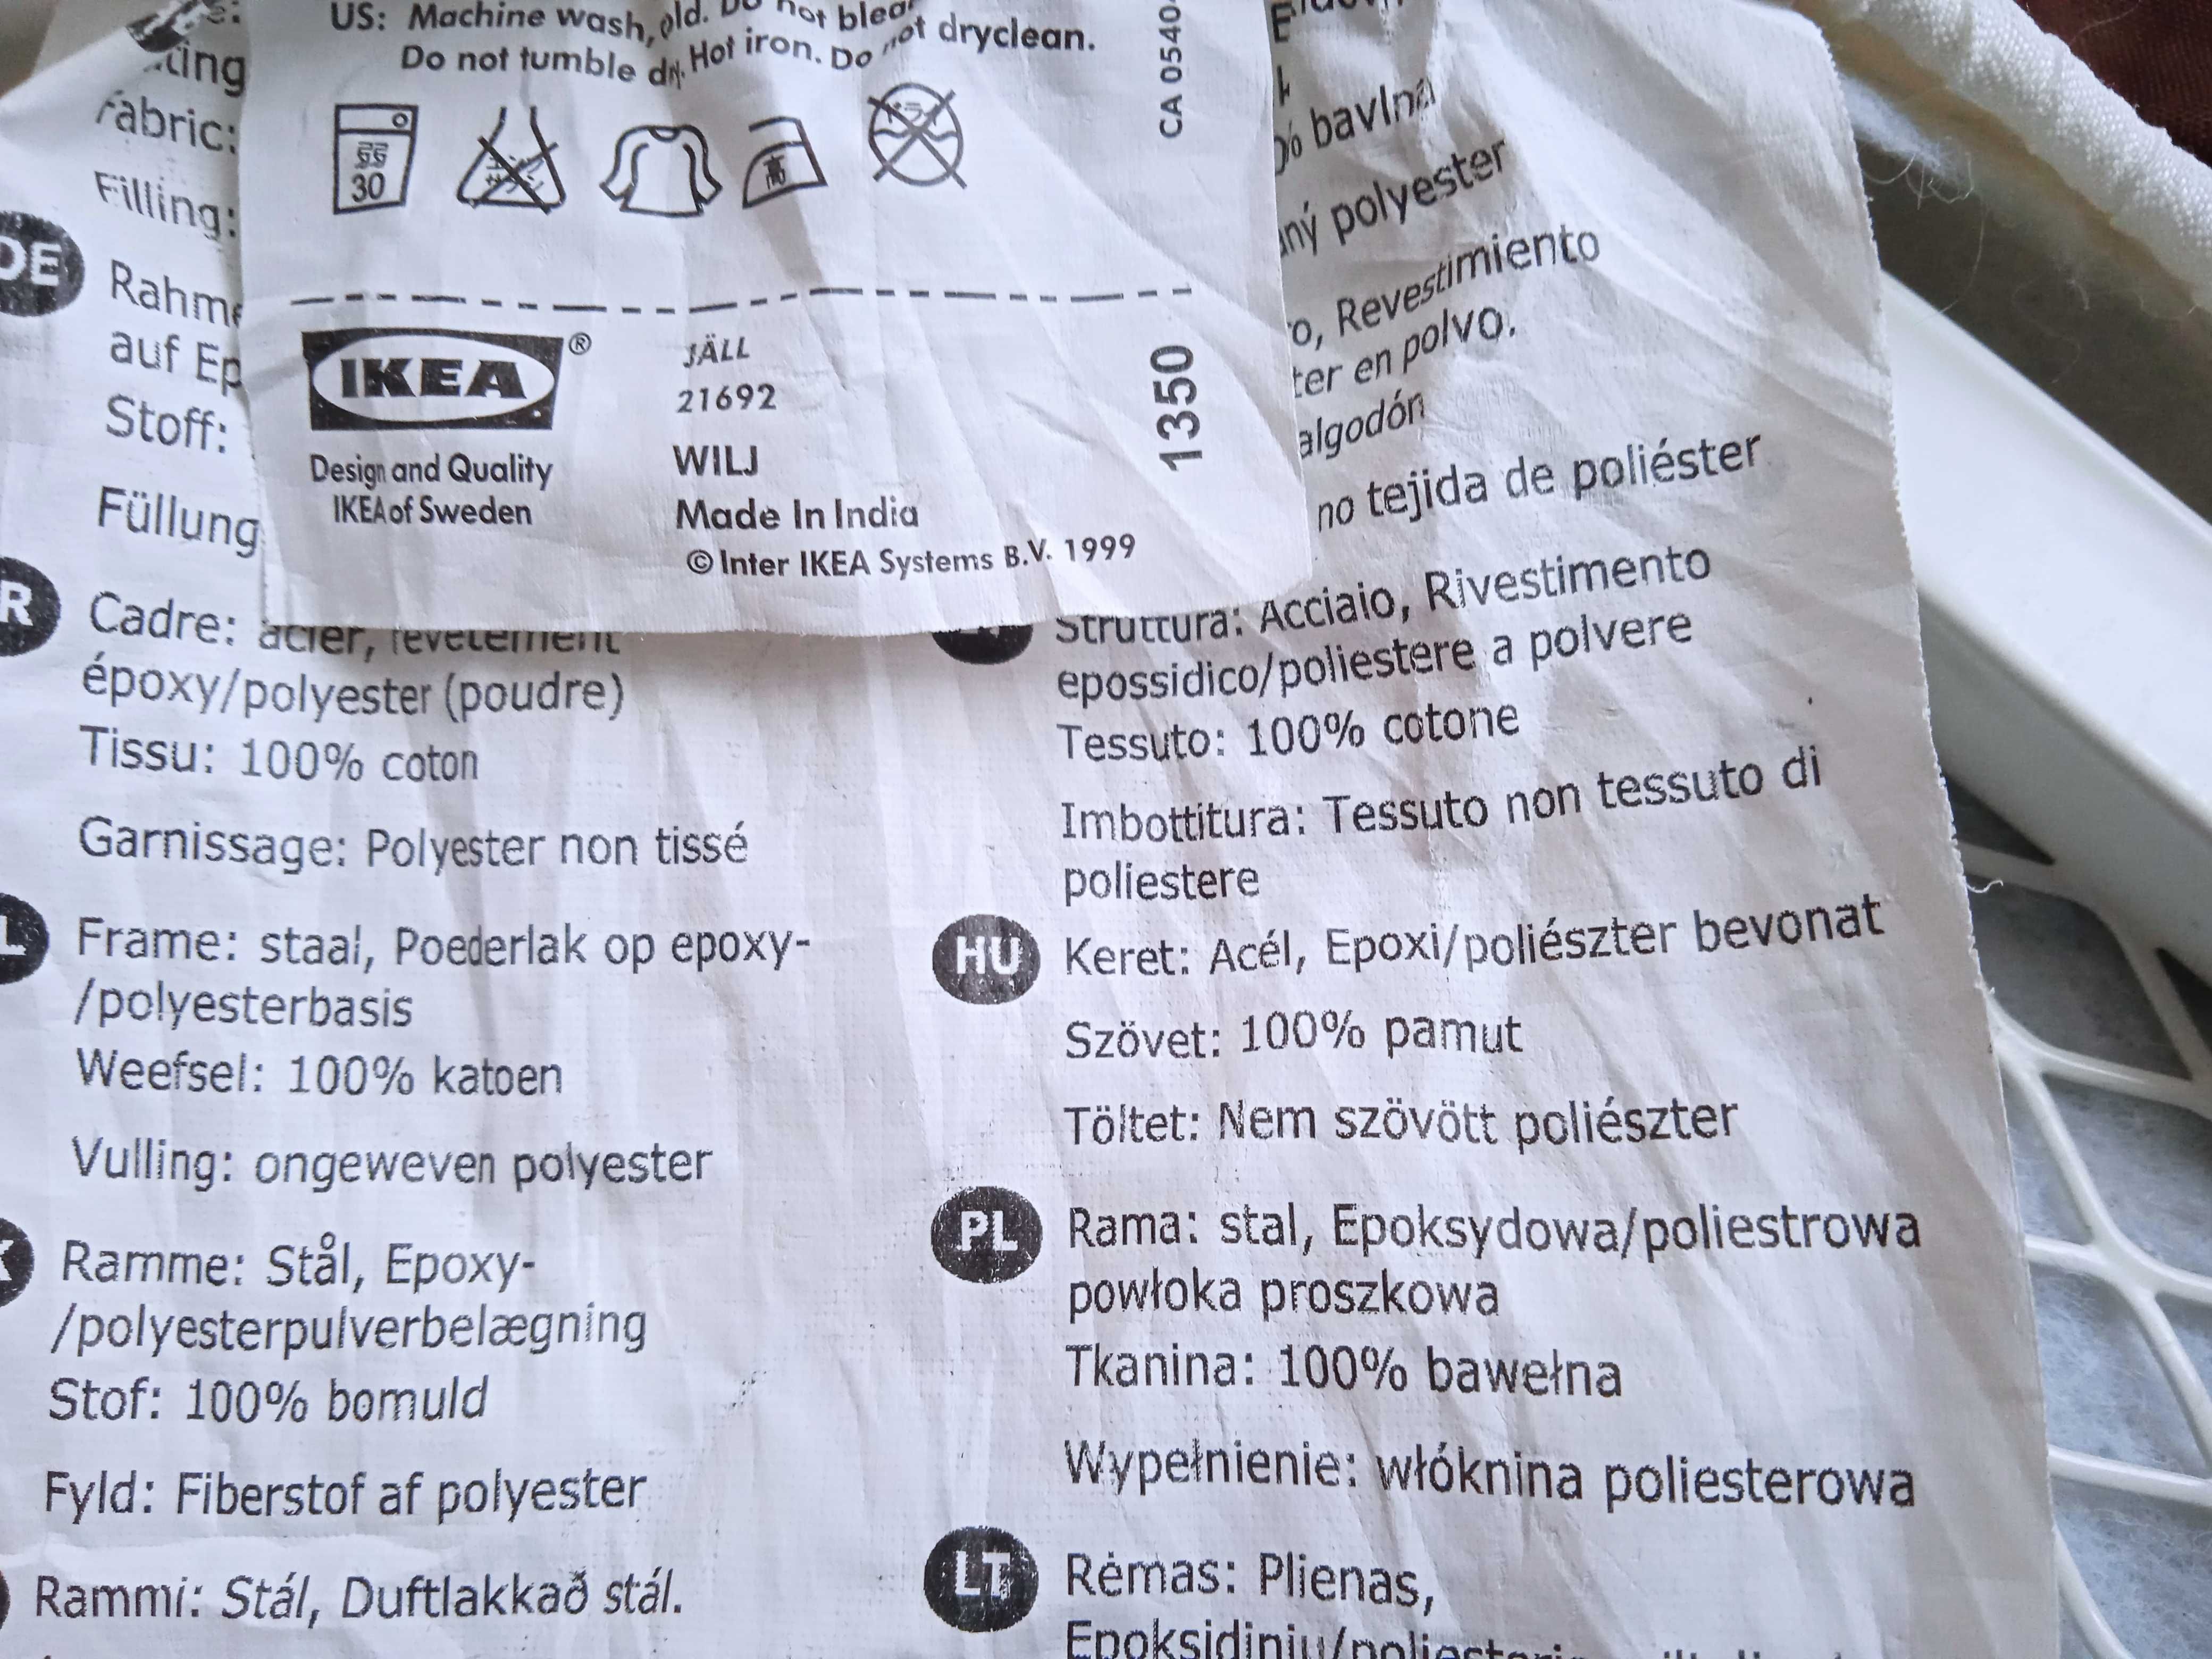 Deska do prasowania nastołowa (turystyczna) Ikea JALL 73 cm x 32 cm